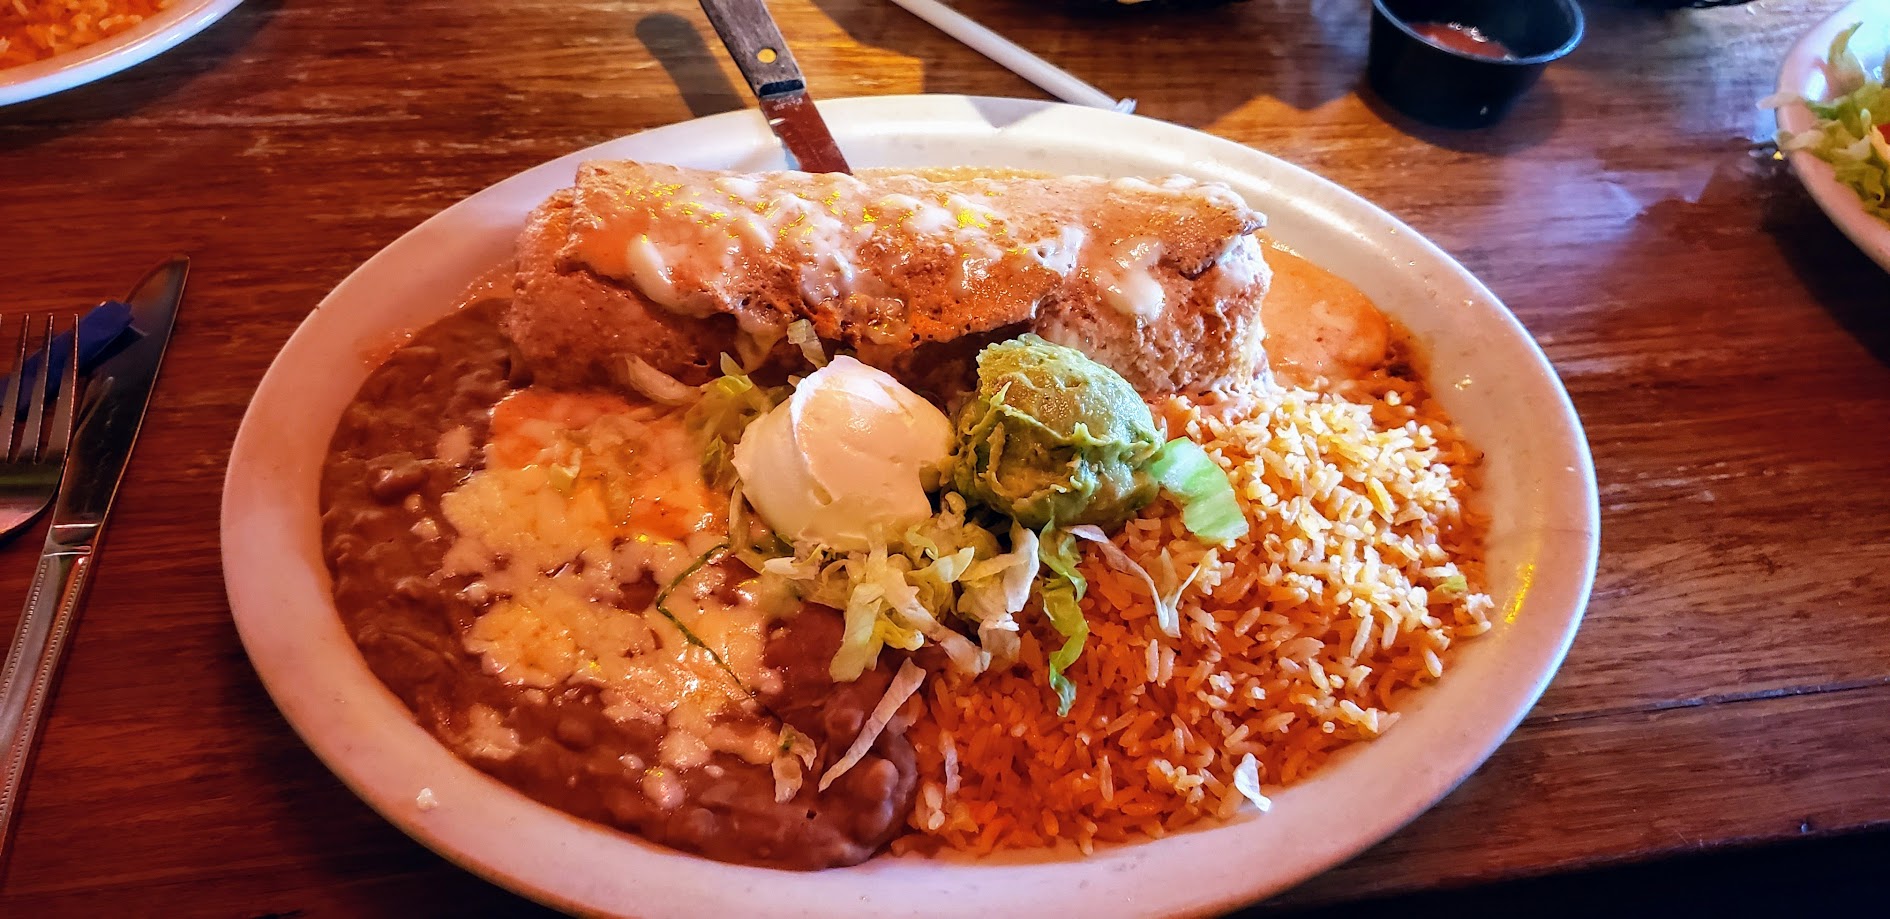 Anita's Mexican Restaurant: 'El Camino Real Location '